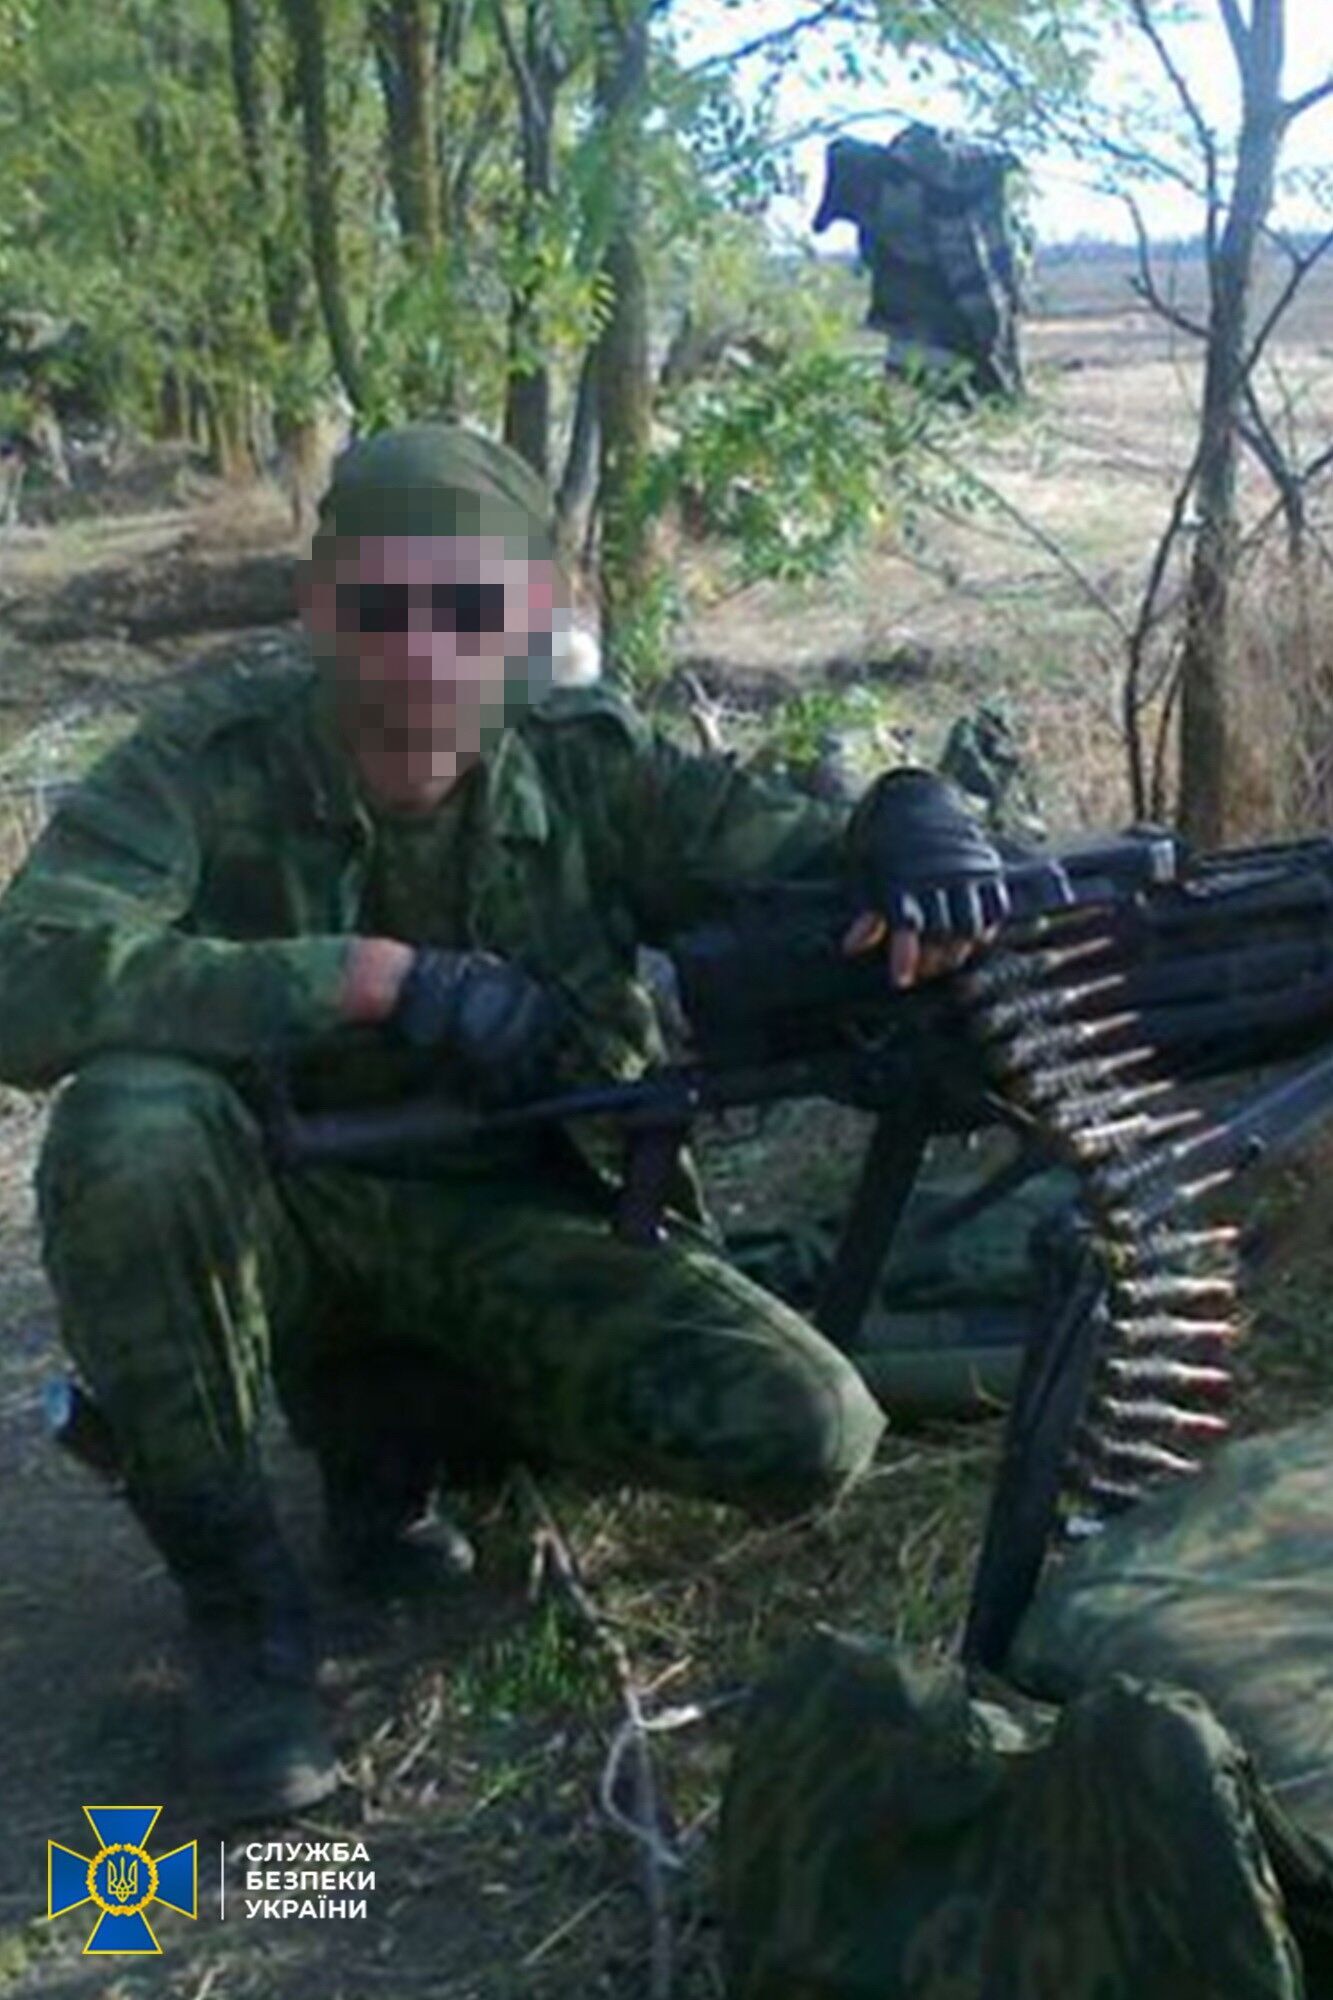 Українець приєднався до терористів у 2014 році